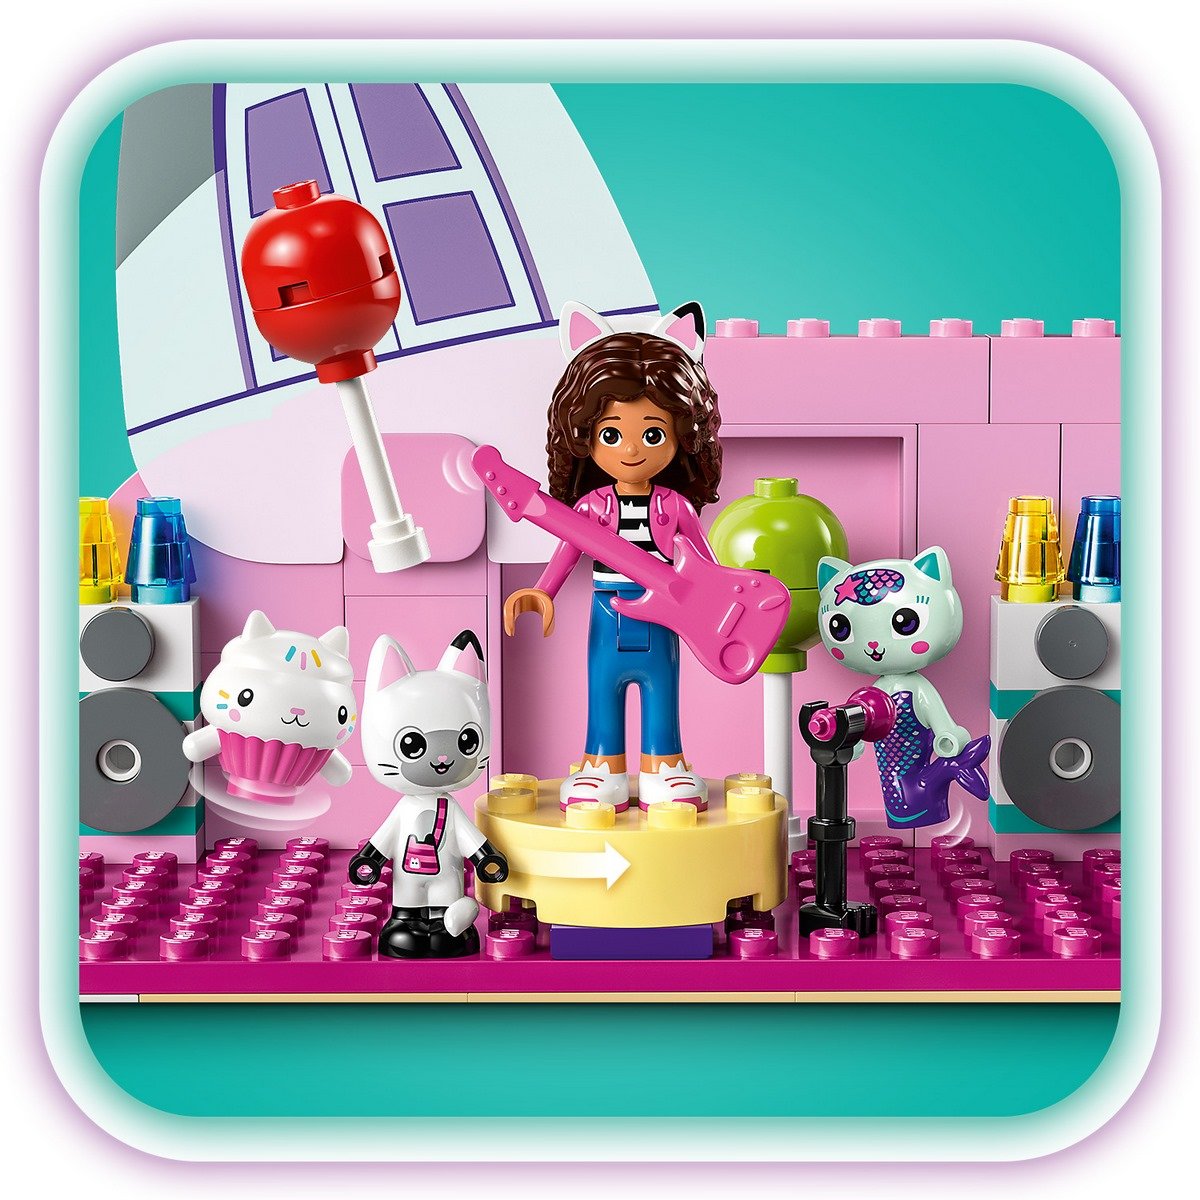 10788 - LEGO® Gabby et la Maison Magique - La Maison Magique de